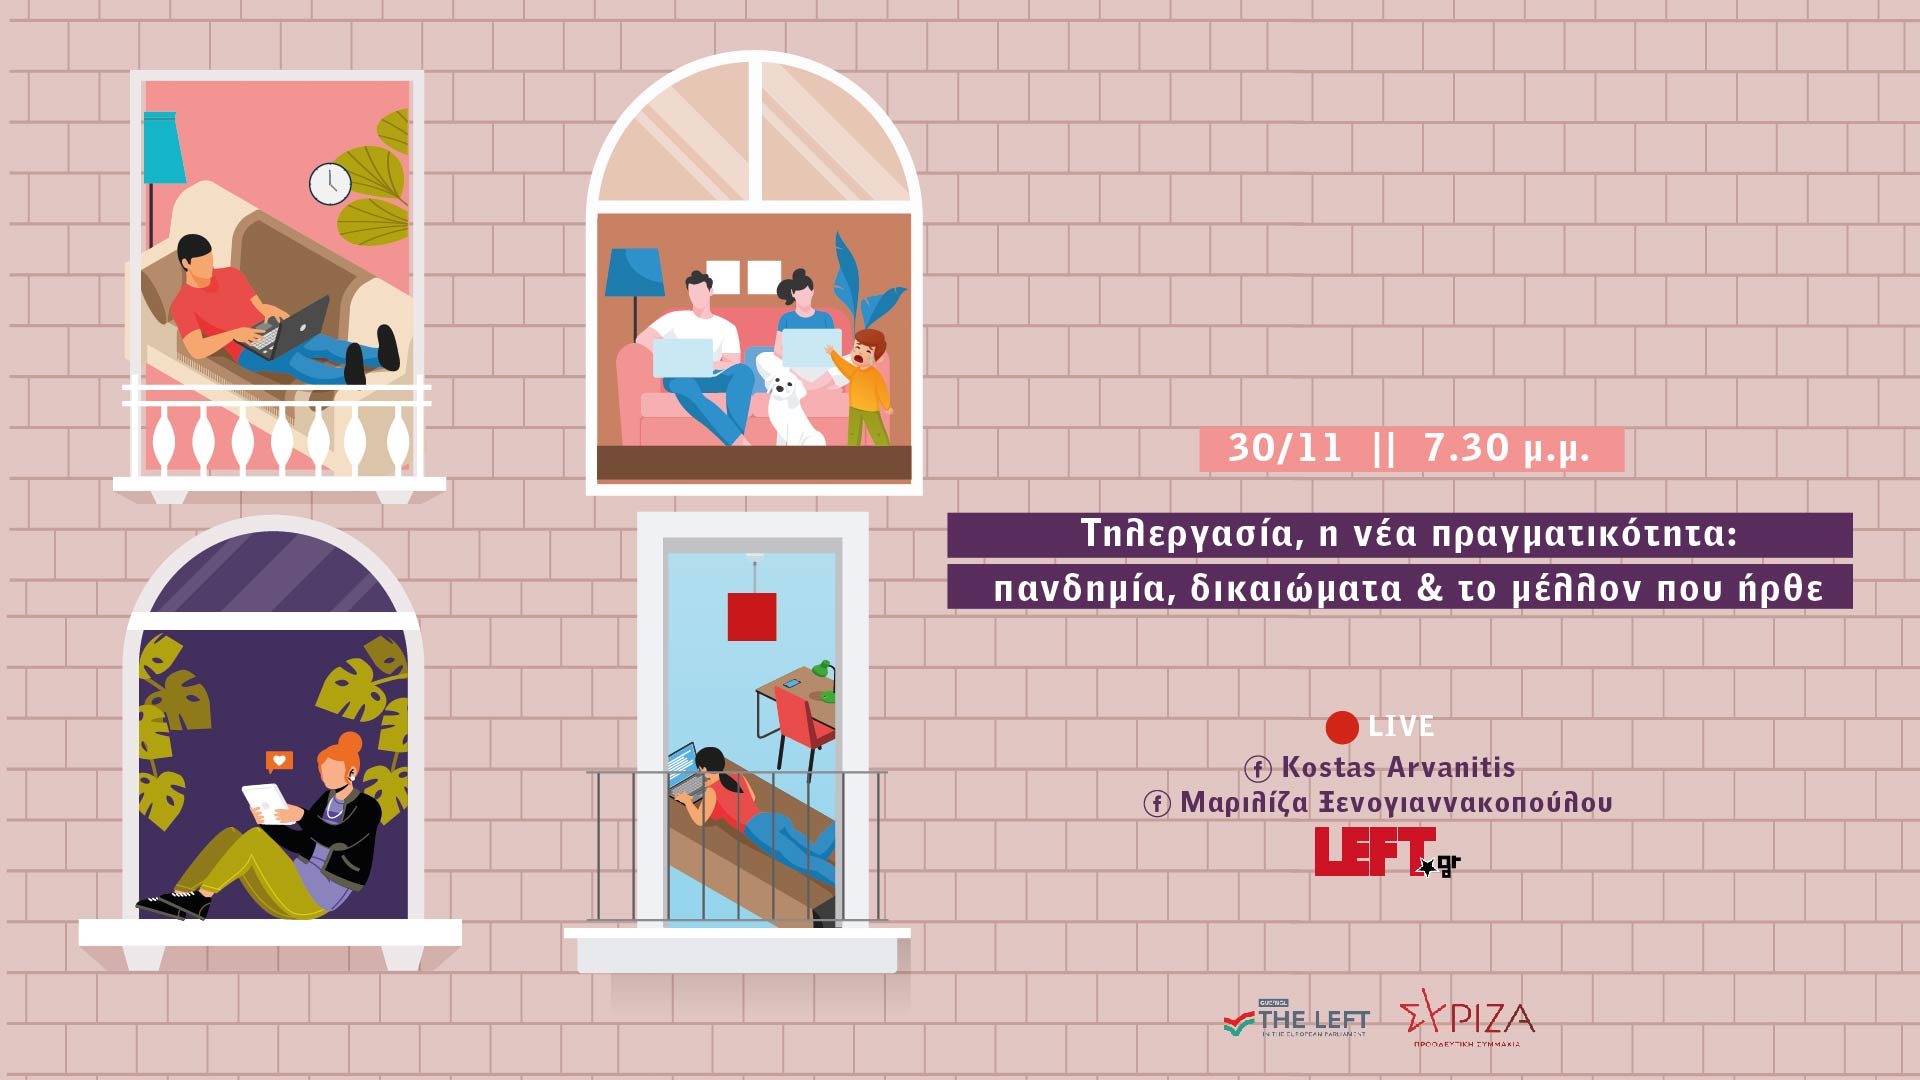 Διαδικτυακή Εκδήλωση των Ξενογιαννακοπούλου - Αρβανίτη: Τηλεργασία, η Νέα Πραγματικότητα